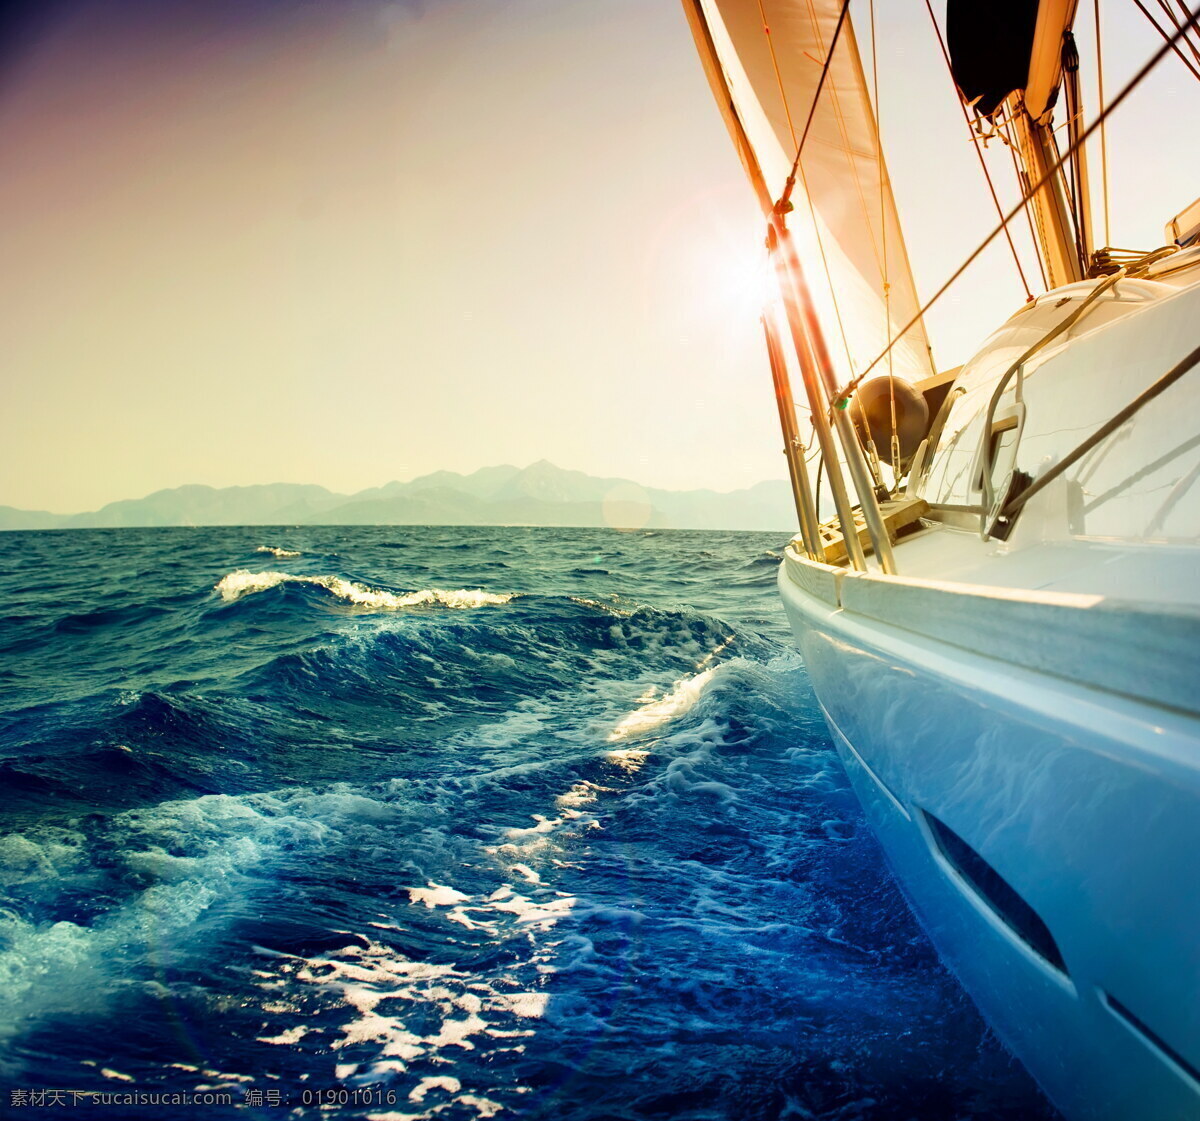 海上帆船 海浪 大海 帆船 游艇 航海 旅行 海洋 海边 一帆风顺 自然美景 乘风破浪 现代科技 交通工具